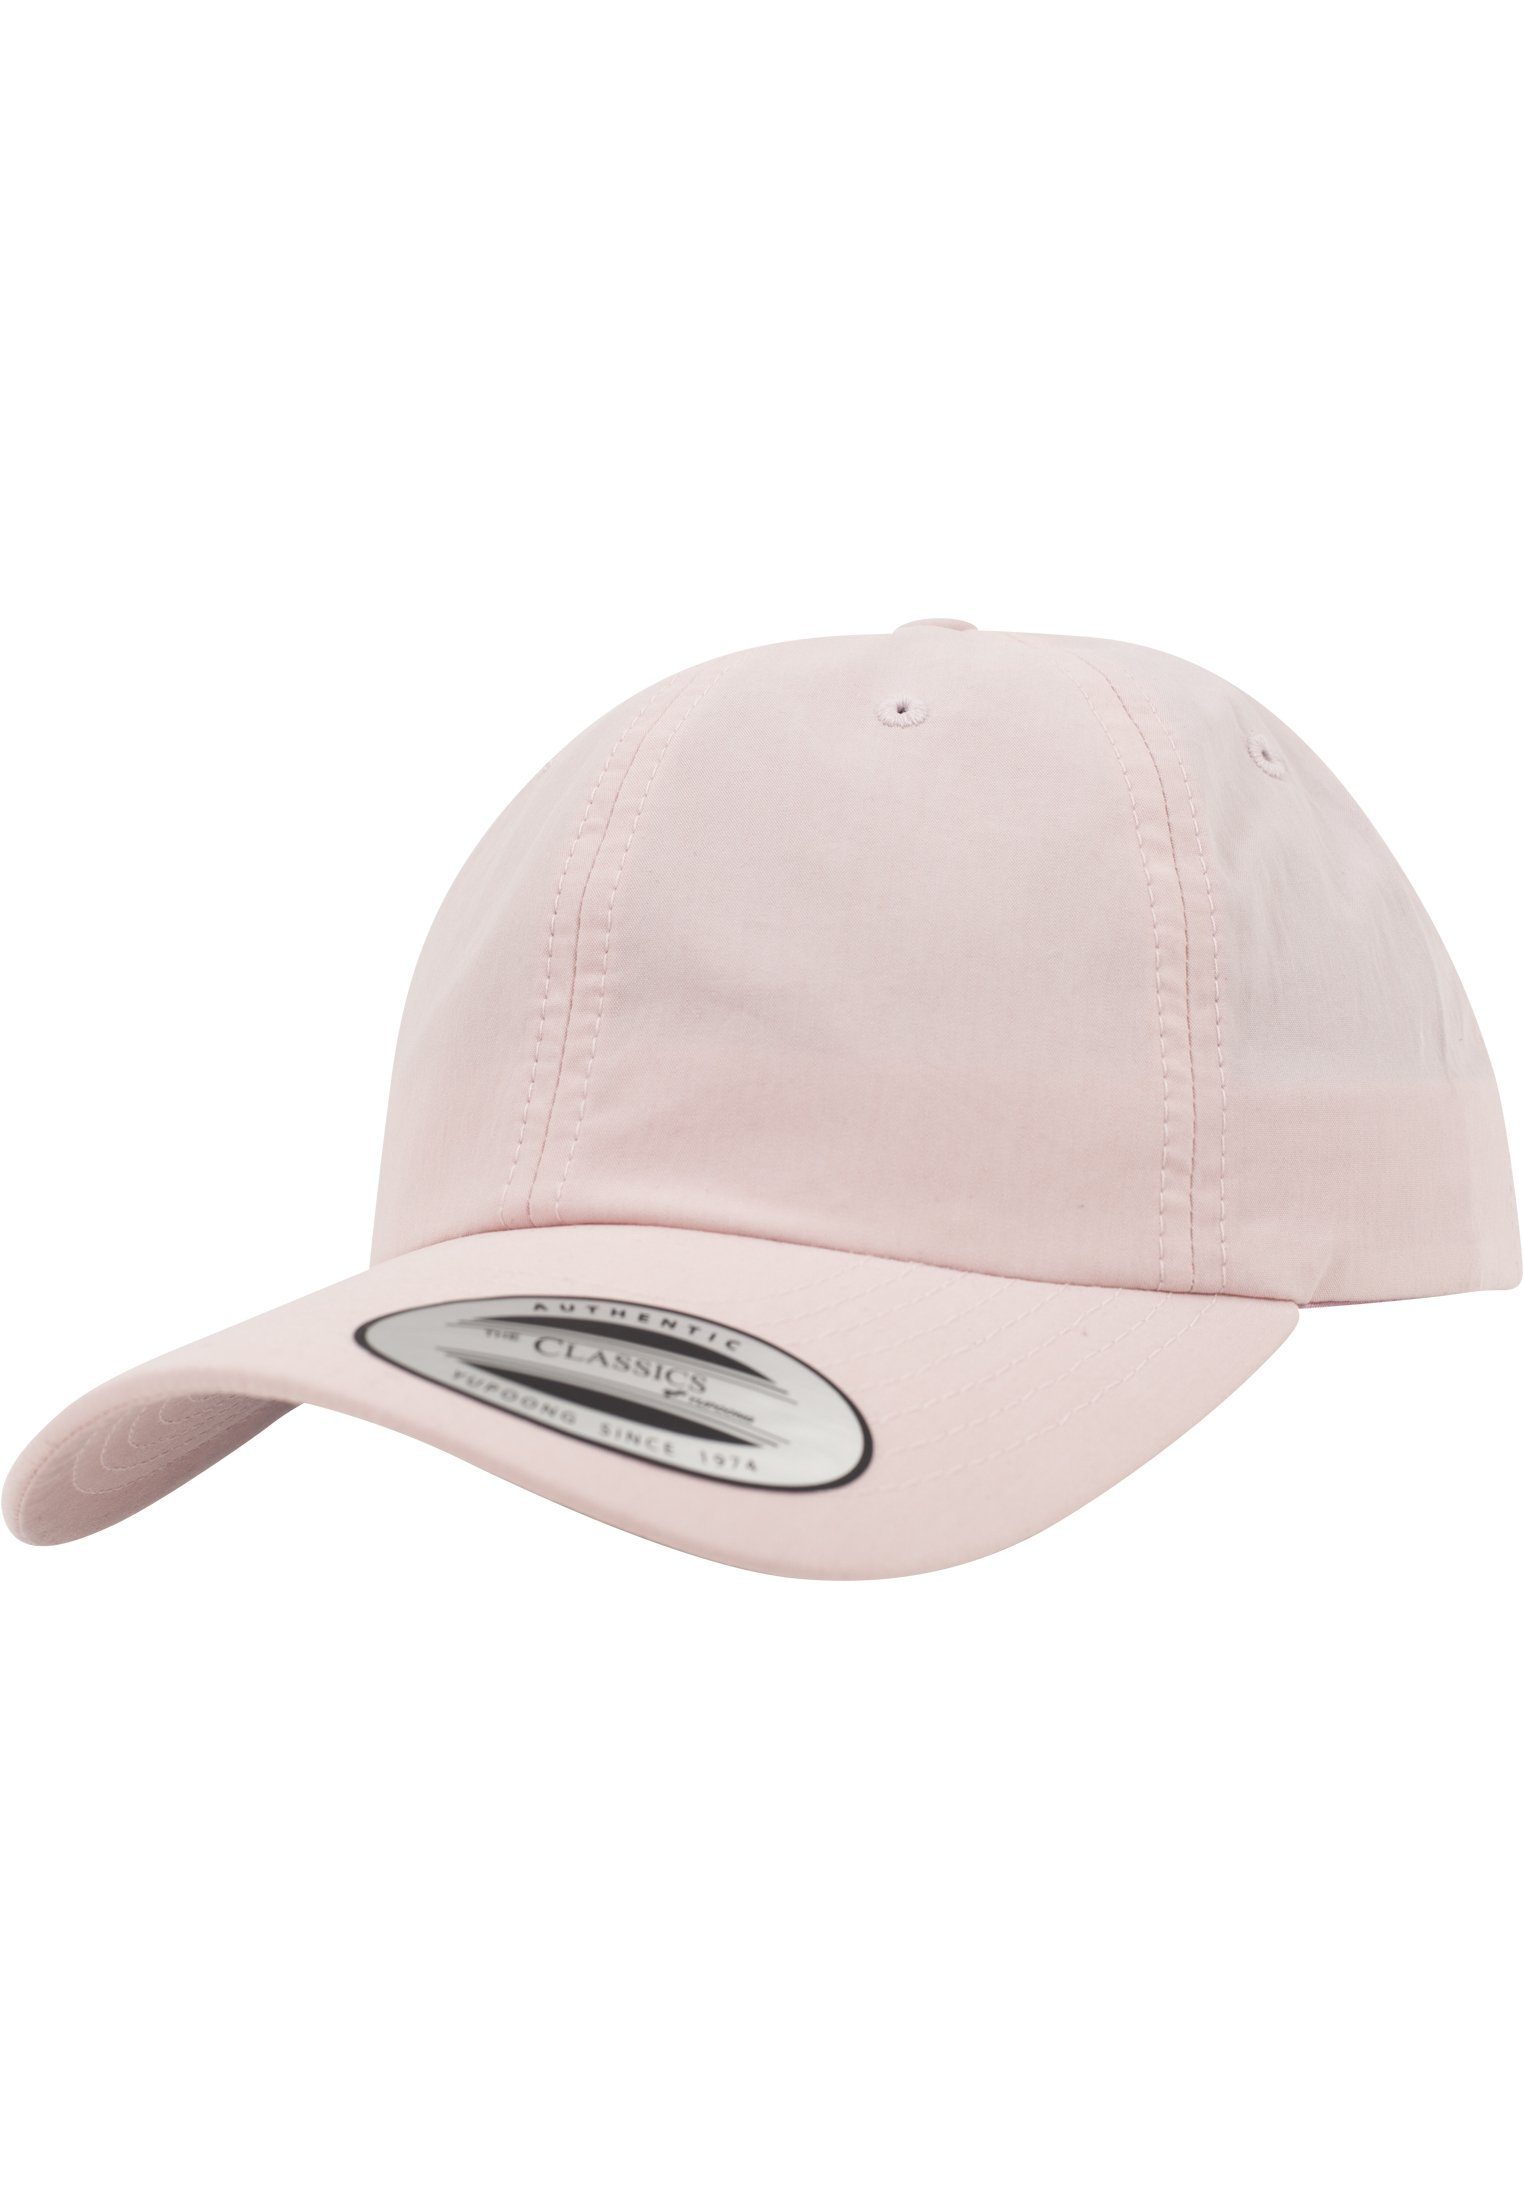 Versandhandel im Ausland! Flexfit Flex Washed Cap Accessoires pink Low Profile Cap